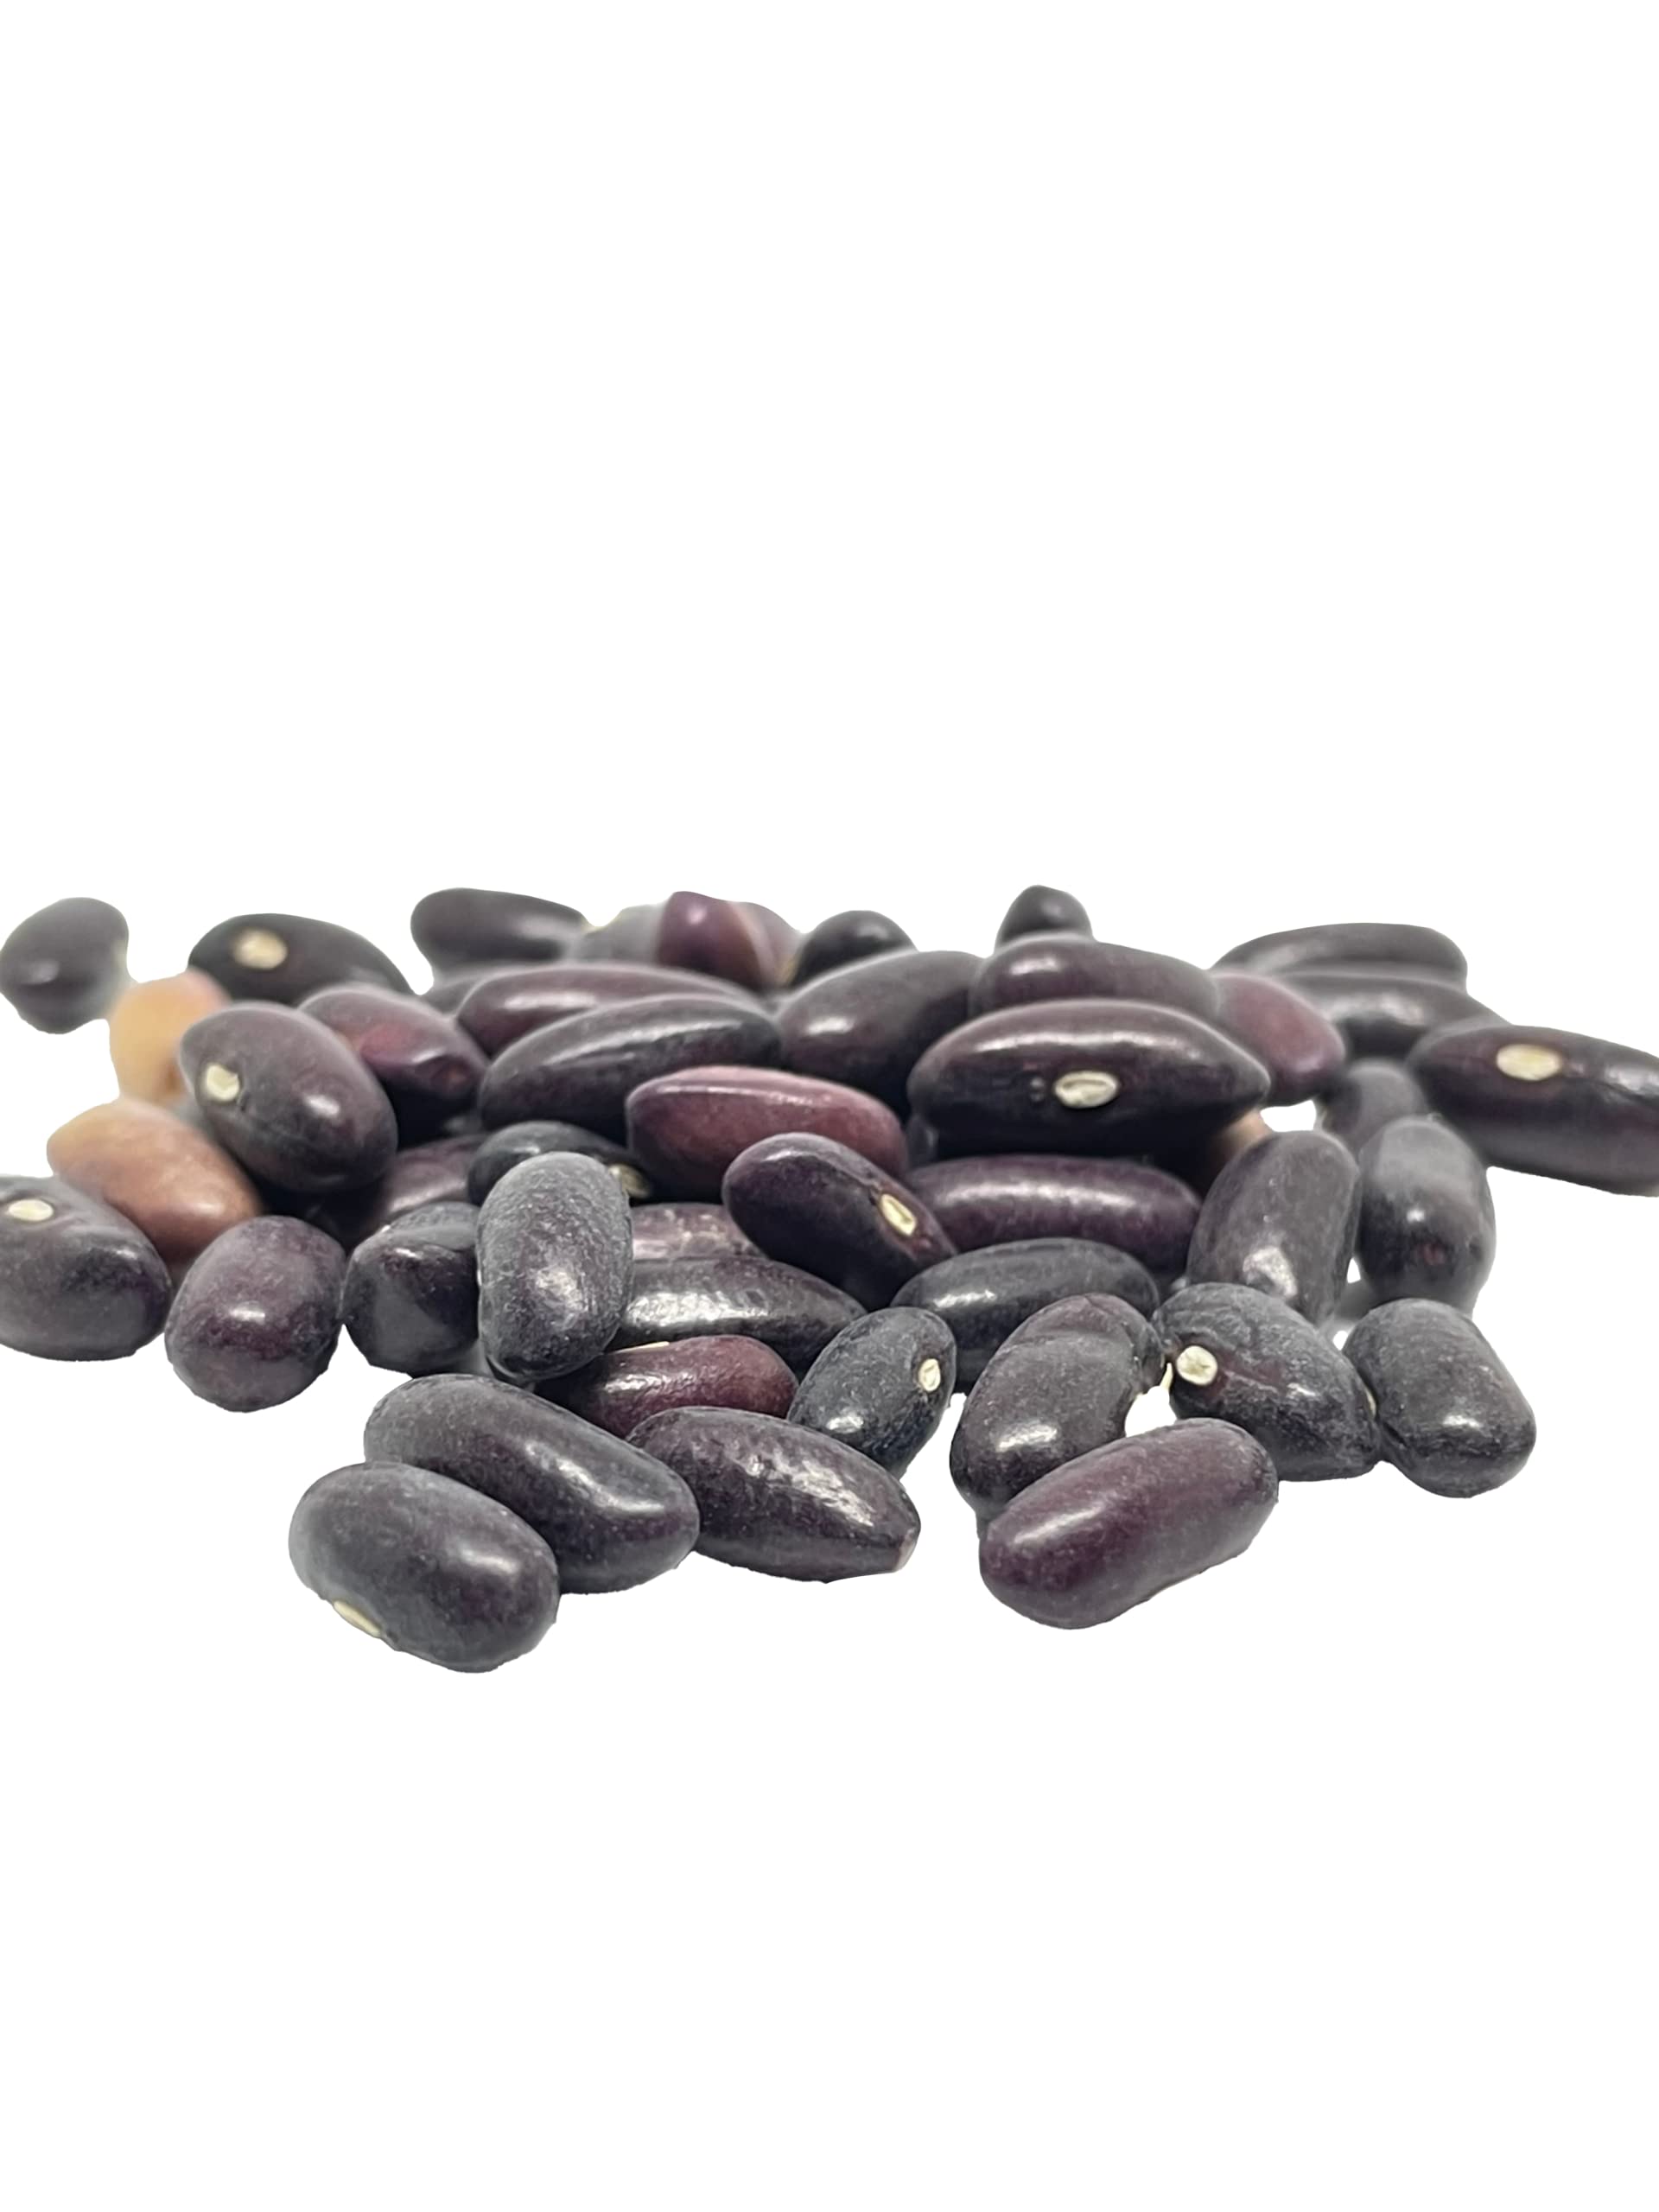 50 Green Bean Seeds for Planting - Provider - Bush Bean - Heirloom Non-GMO Vegetable Seeds for Planting